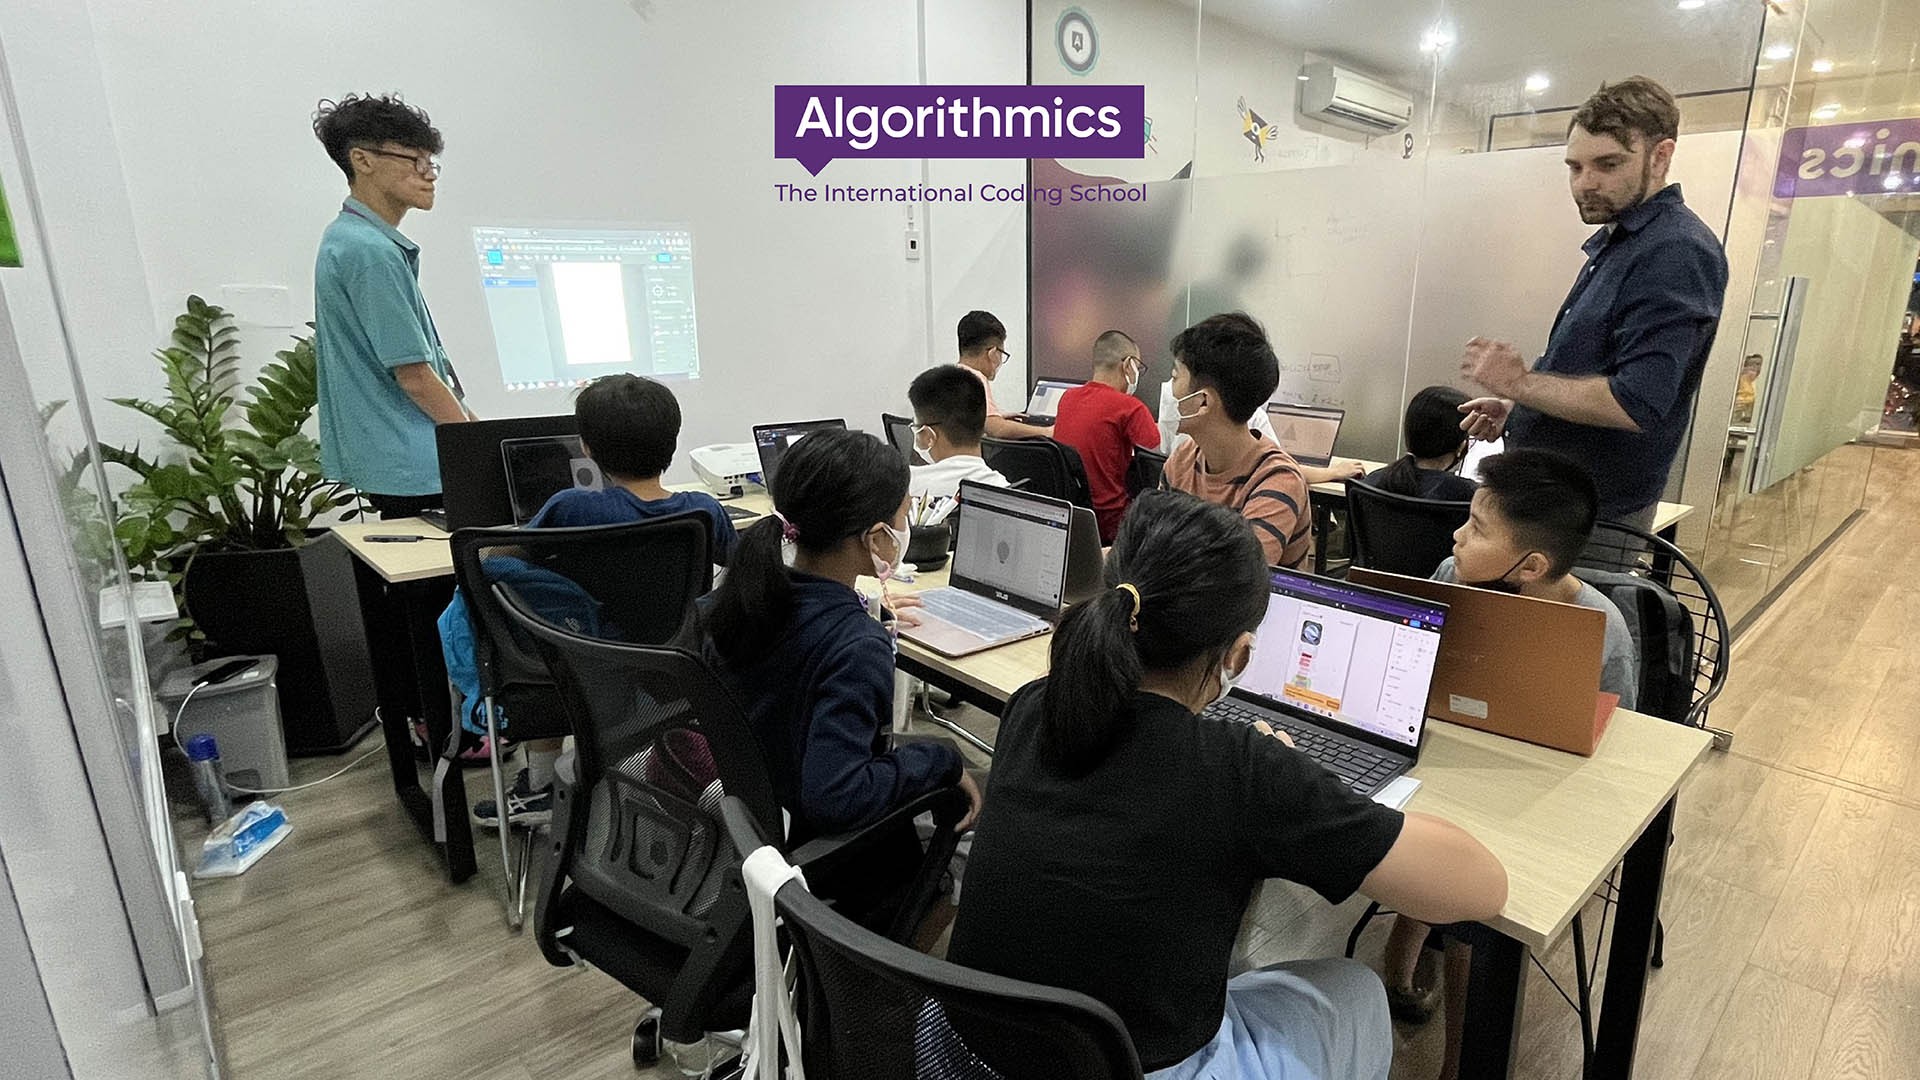 Vì sao ba mẹ nên cho trẻ tham gia các lớp lập trình quốc tế tại Algorithmics?